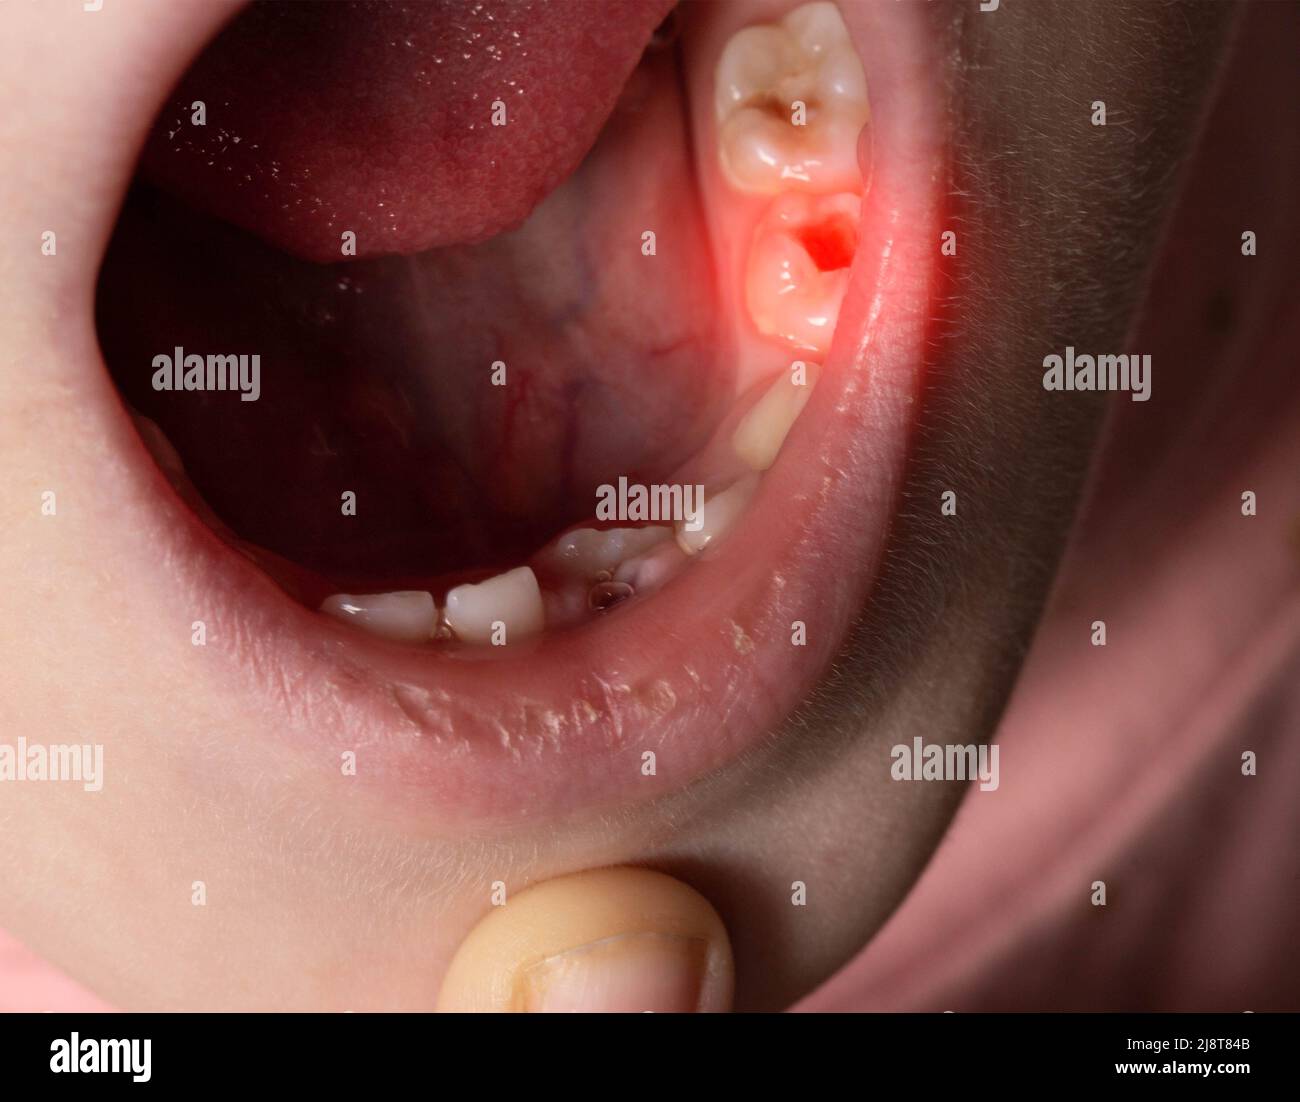 Tiefes Karies bei Kindern auf Milchzähnen. Behandlung von Karies, Zahnschmerzen. Makro Stockfoto